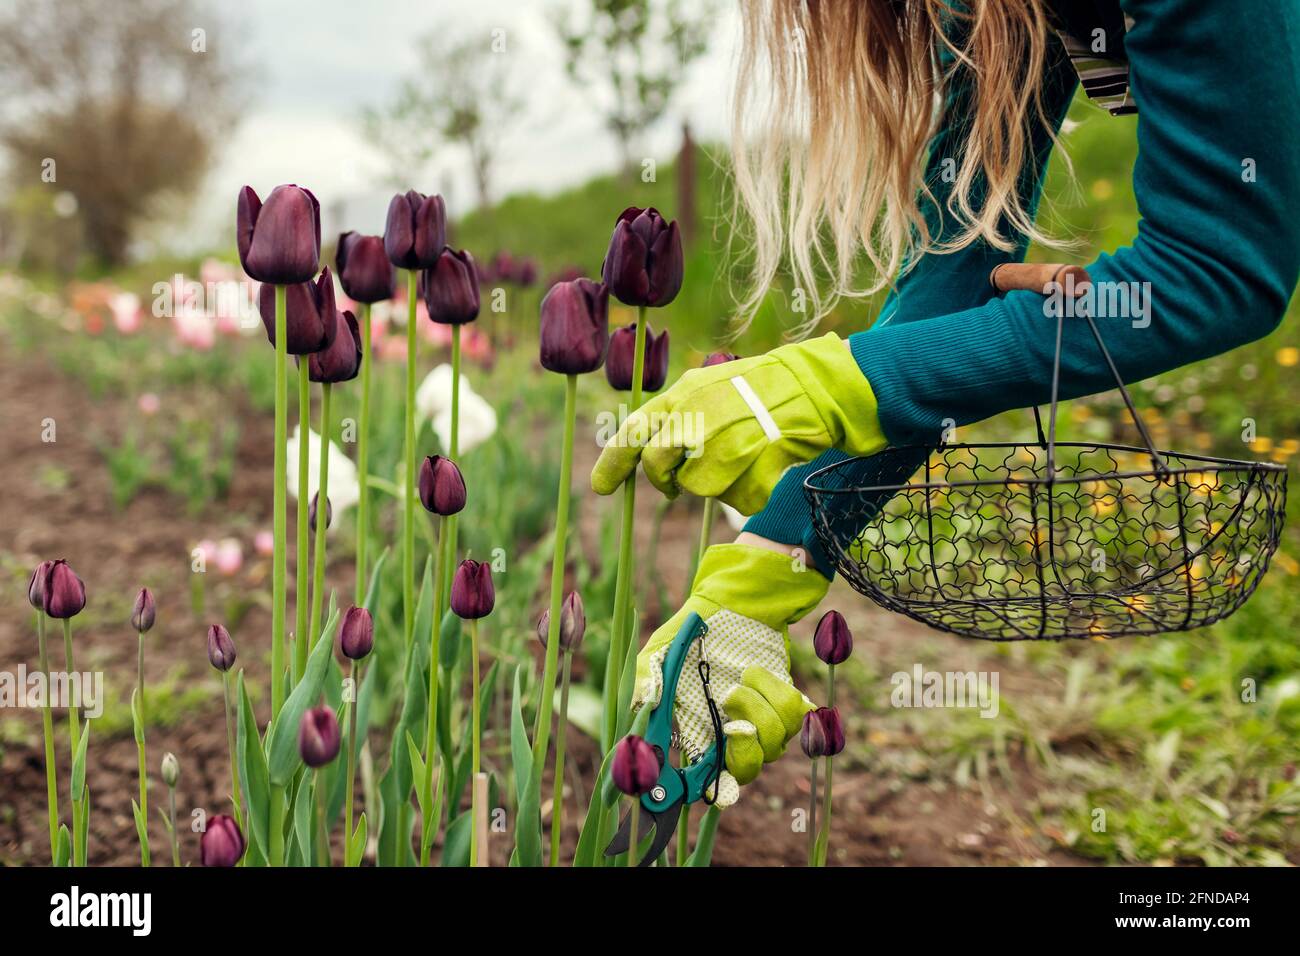 Jardinero recogiendo tulipanes negros púrpura en el jardín de primavera. La mujer corta las flores con los secateurs que sostienen la cesta. Reina de la variedad de noche de cerca Foto de stock